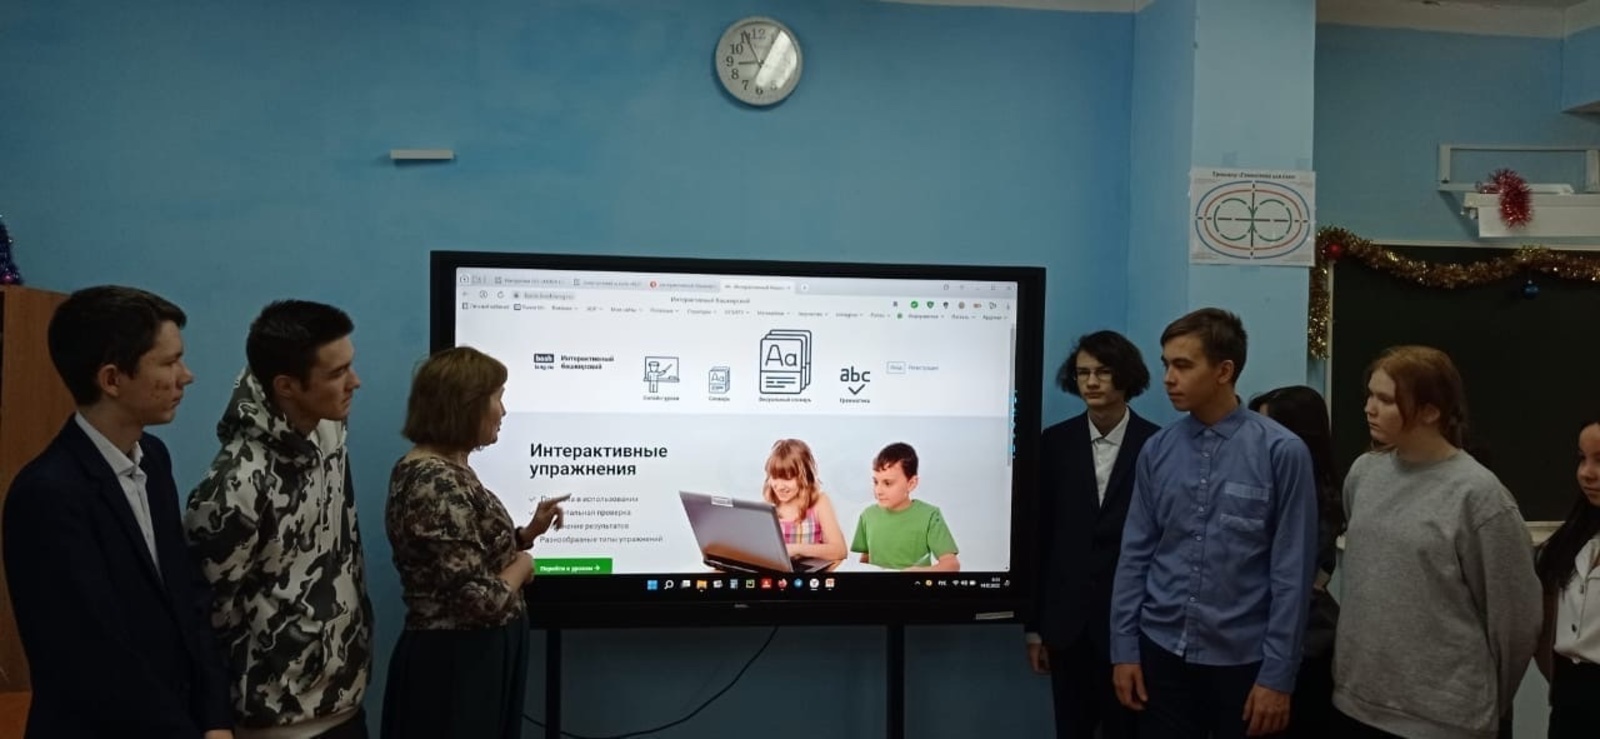 В средней школе № 1 с. Бижбуляк проводятся занятия "Интерактивный башкирский"